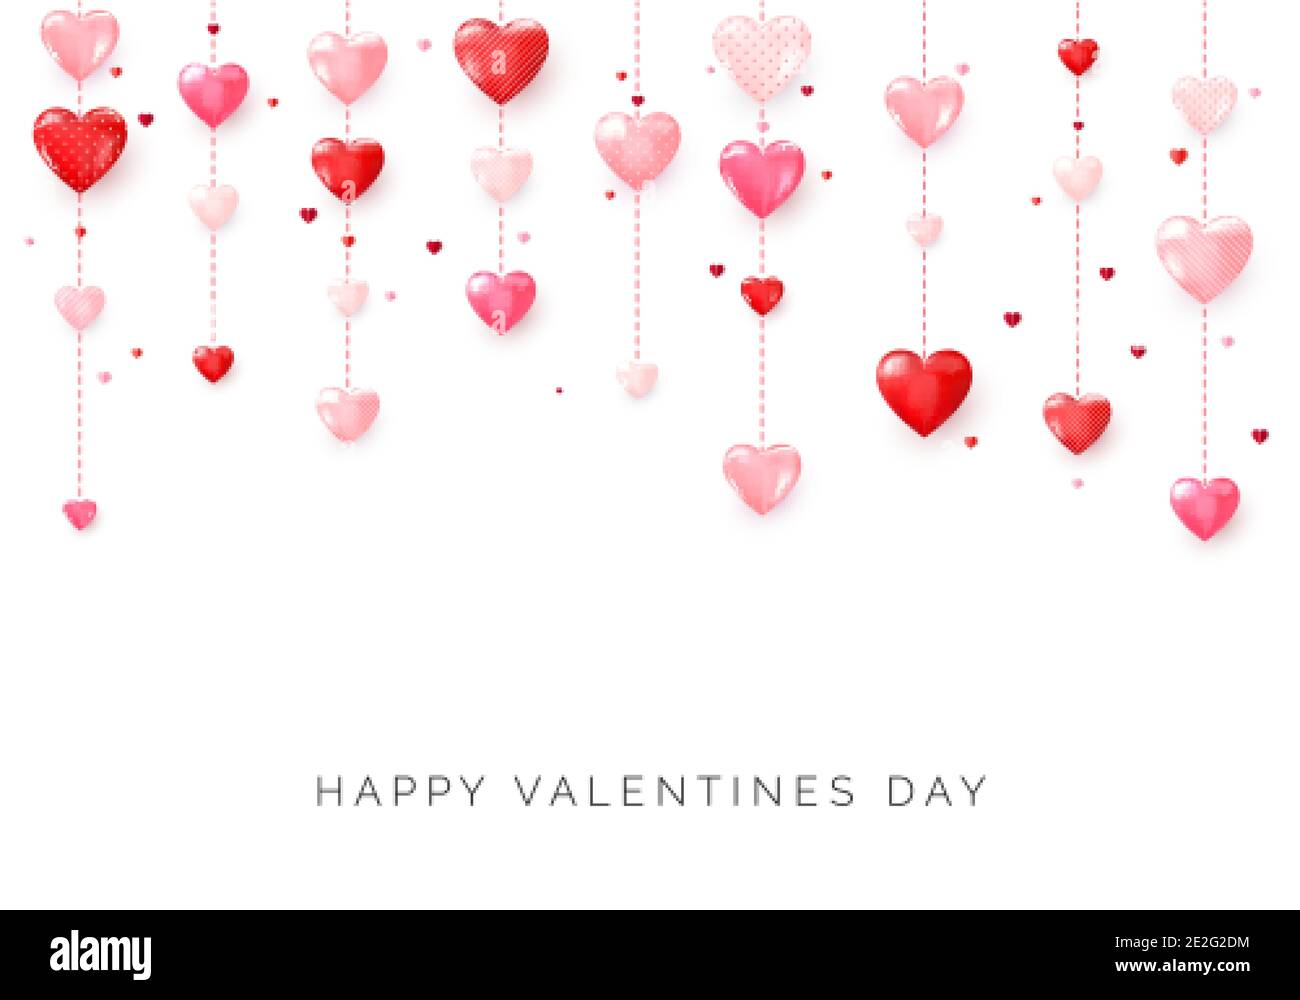 Valentinskarte zum Valentinstag. Hängende rosa und rote Herzen. Vektor Stock Vektor